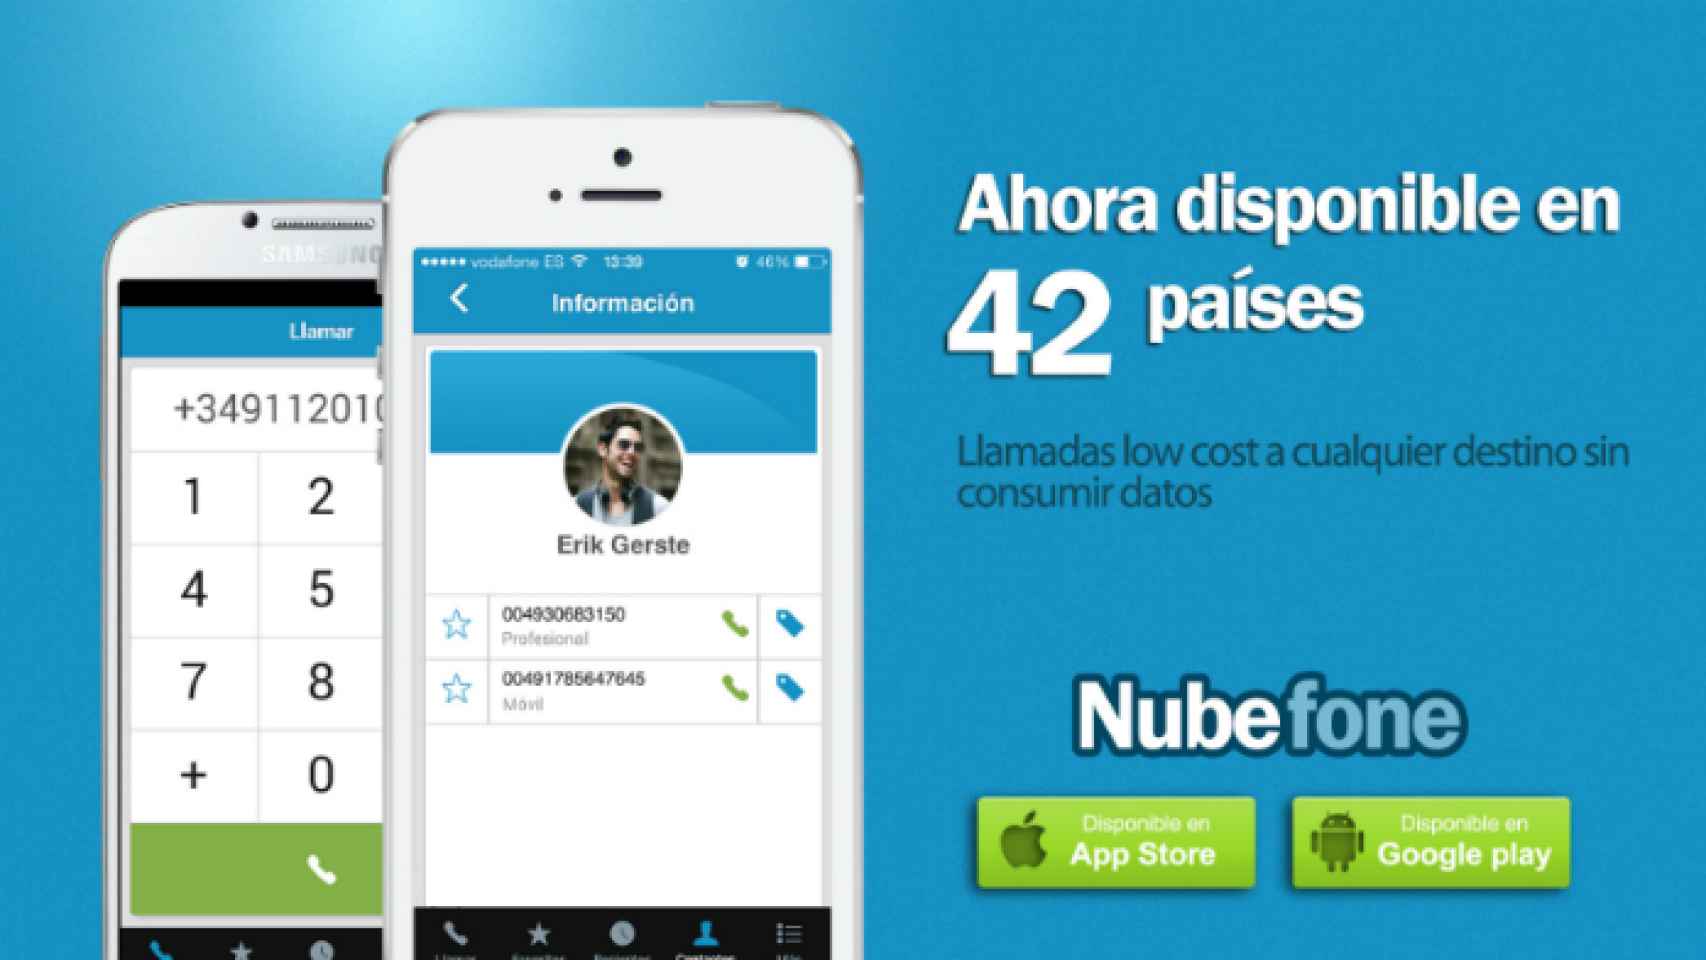 Nubefone, la app para llamar a fijos y móviles, ya disponible en 42 países